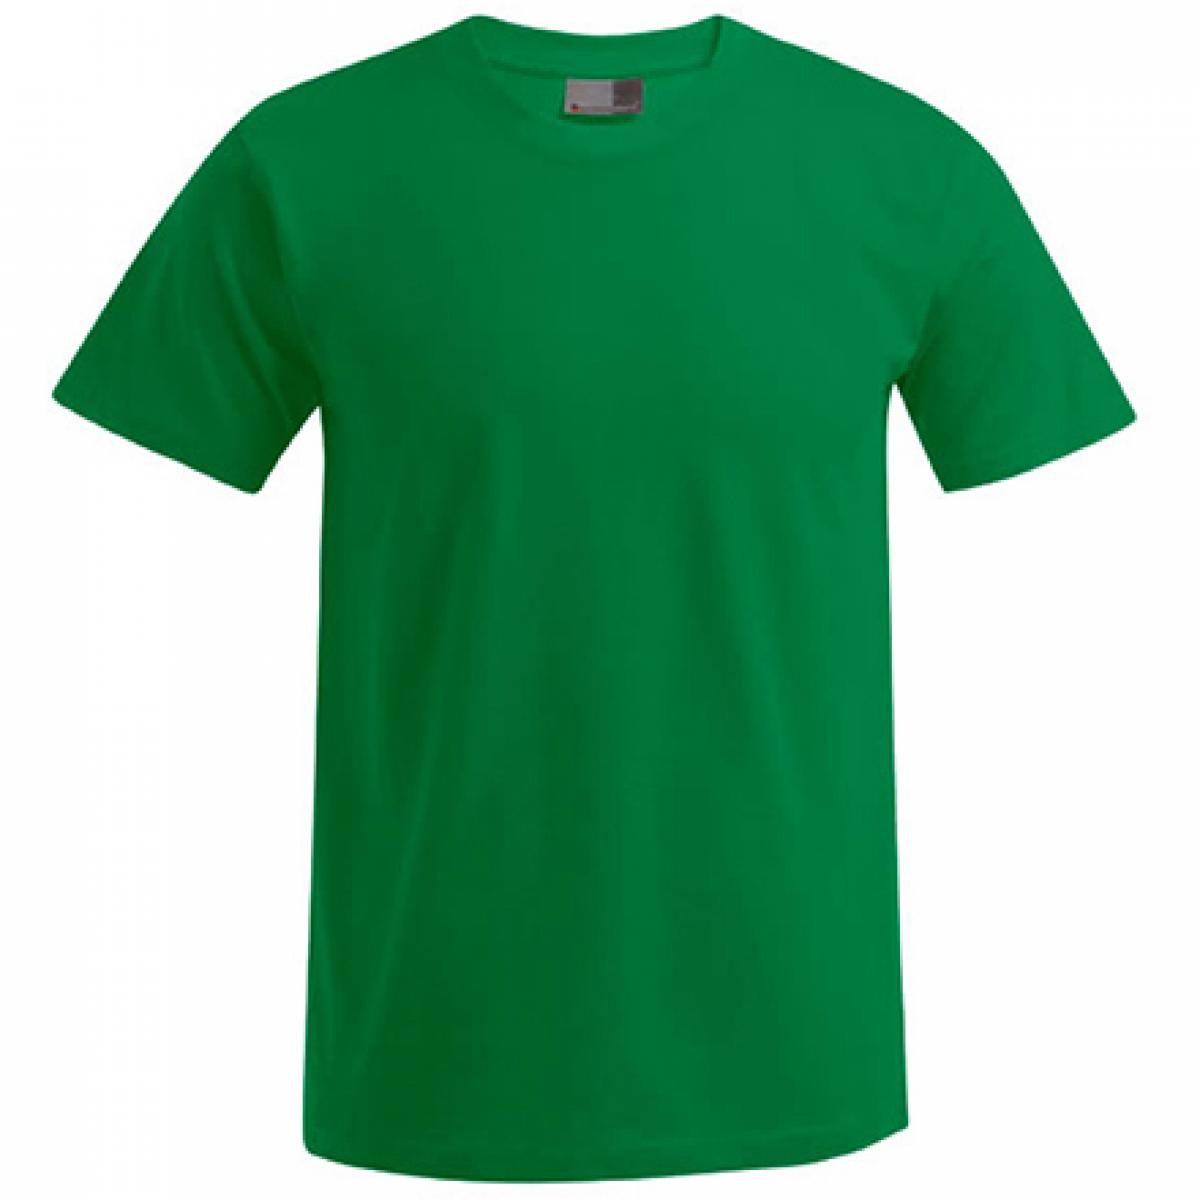 Hersteller: Promodoro Herstellernummer: 3000/3099 Artikelbezeichnung: Men´s Premium Herren T-Shirt - bis 5XL Farbe: Kelly Green